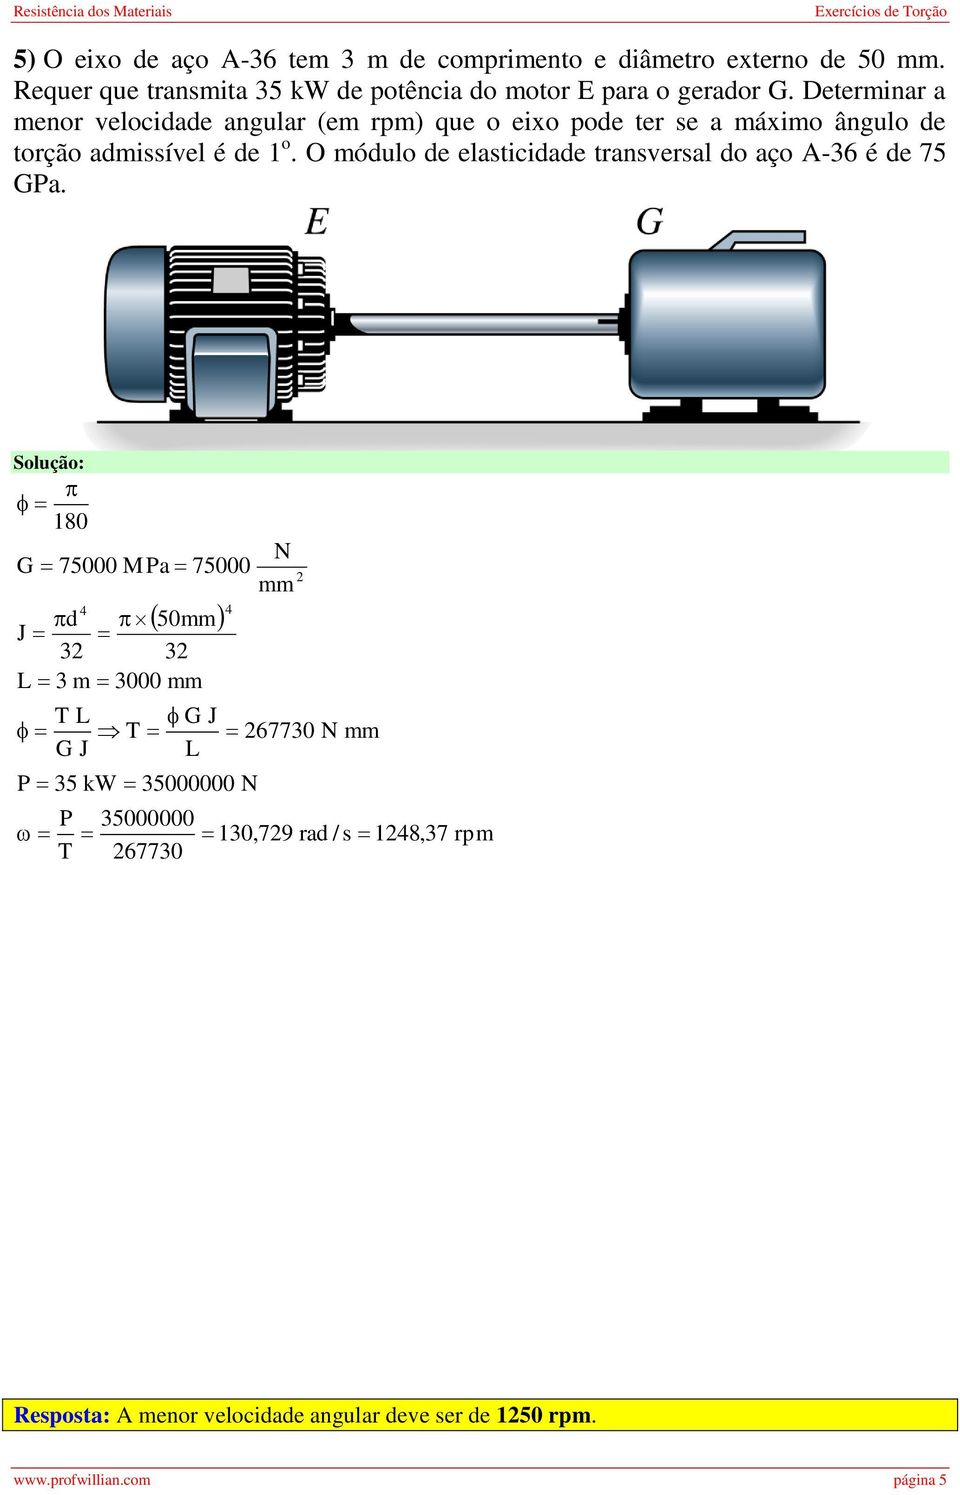 Determnar a menor velocdade angular (em rpm) que o exo pode ter se a máxmo ângulo de torção ssível é de 1 o.